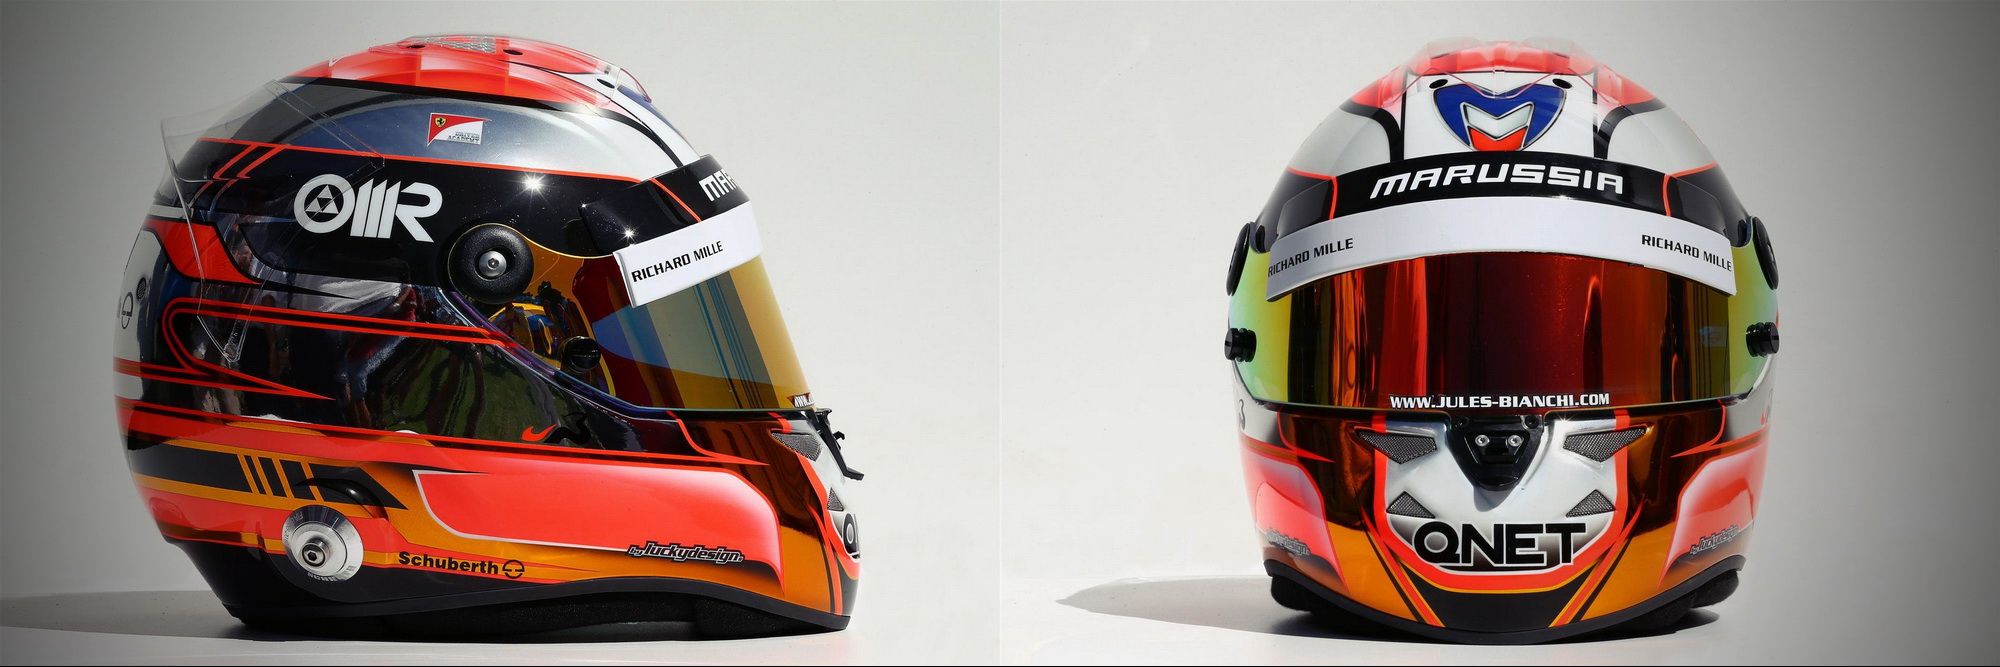 Шлем Жюля Бьянки на сезон 2014 года | 2014 helmet of Jules Bianchi